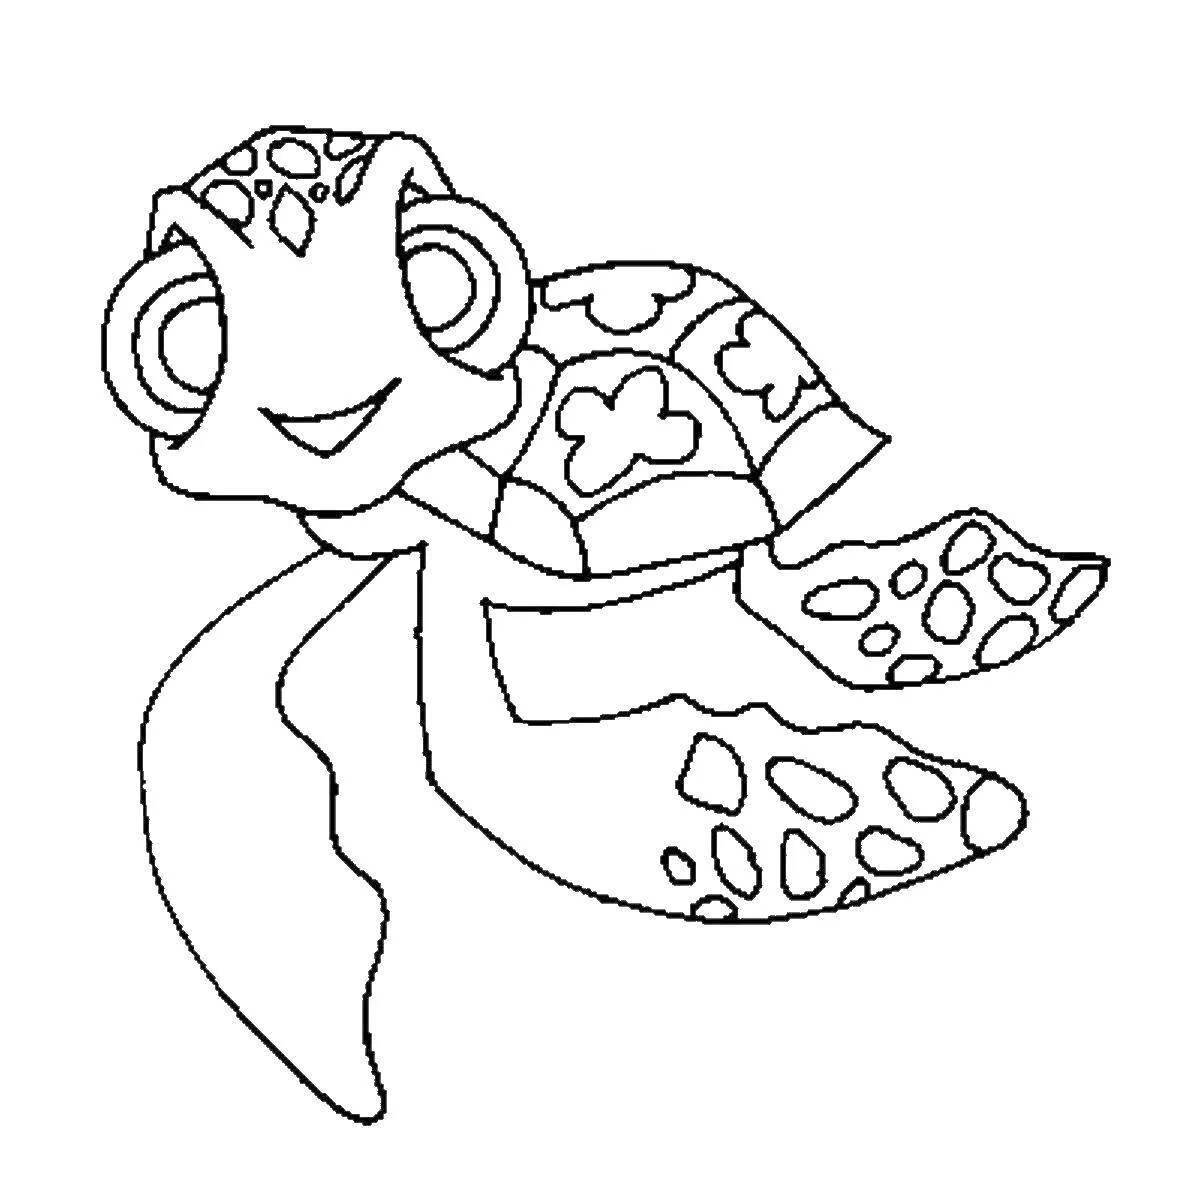 Раскраска ослепительная морская черепаха